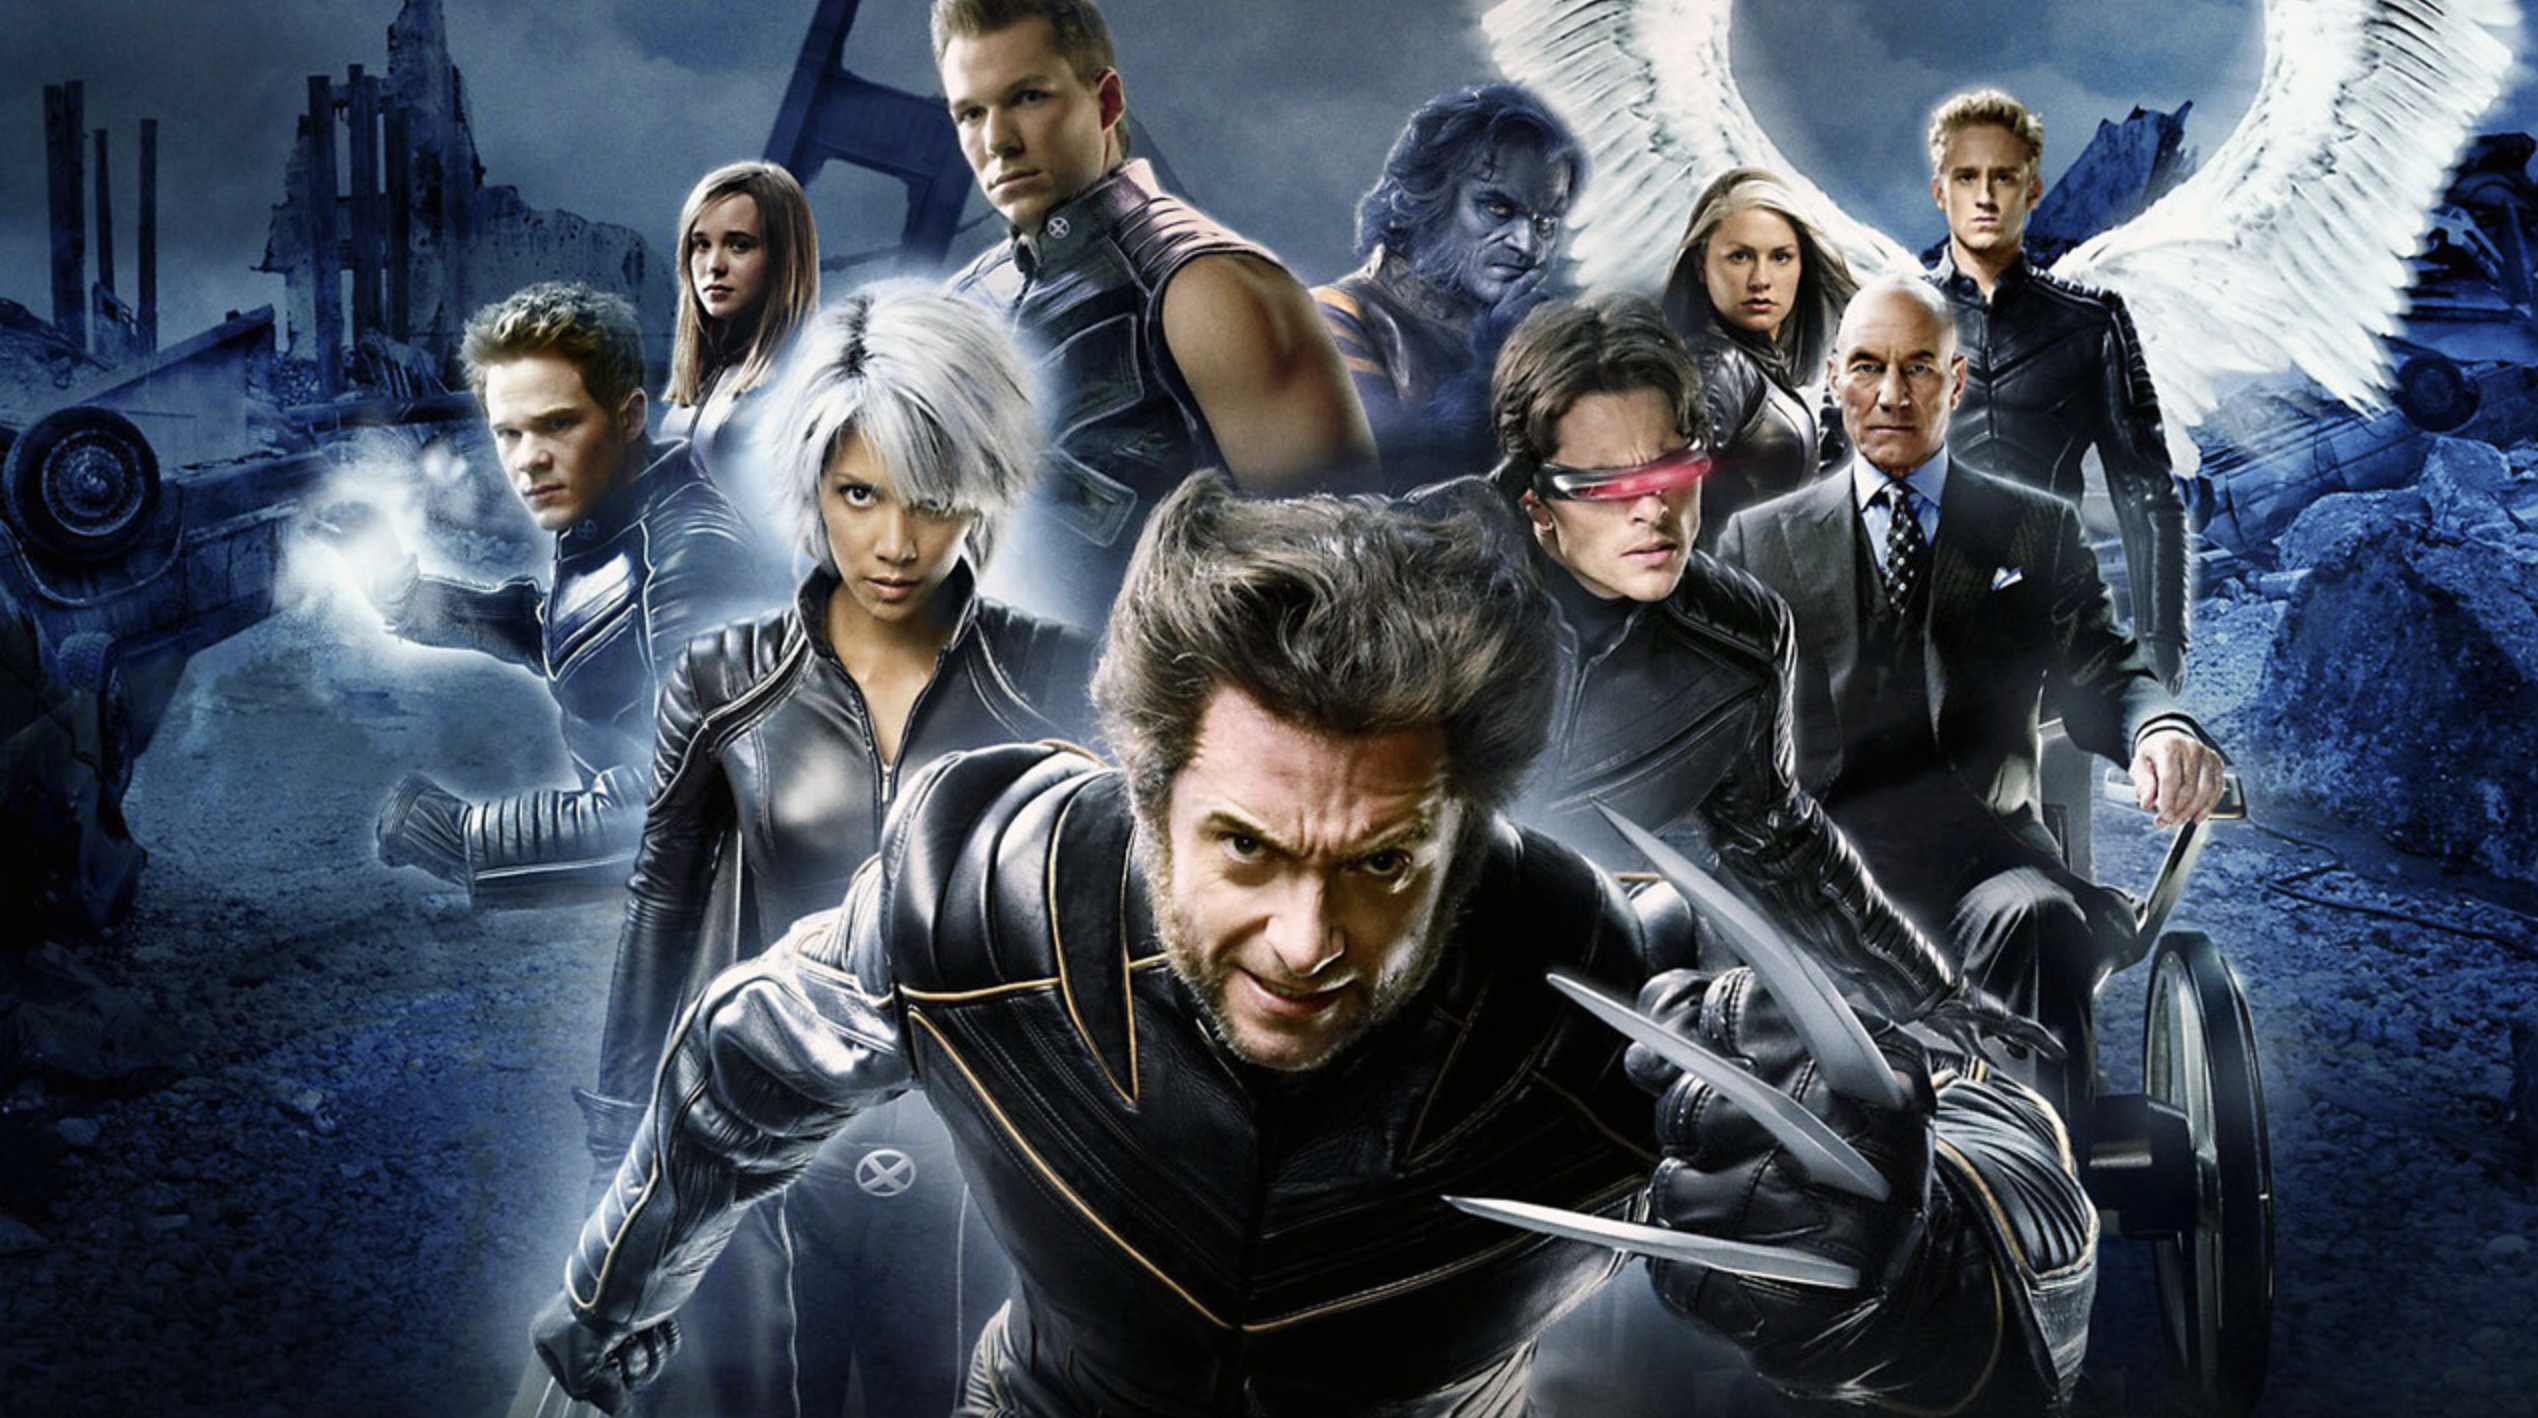 Une promo virale pour X-Men : Apocalypse (Vidéo)